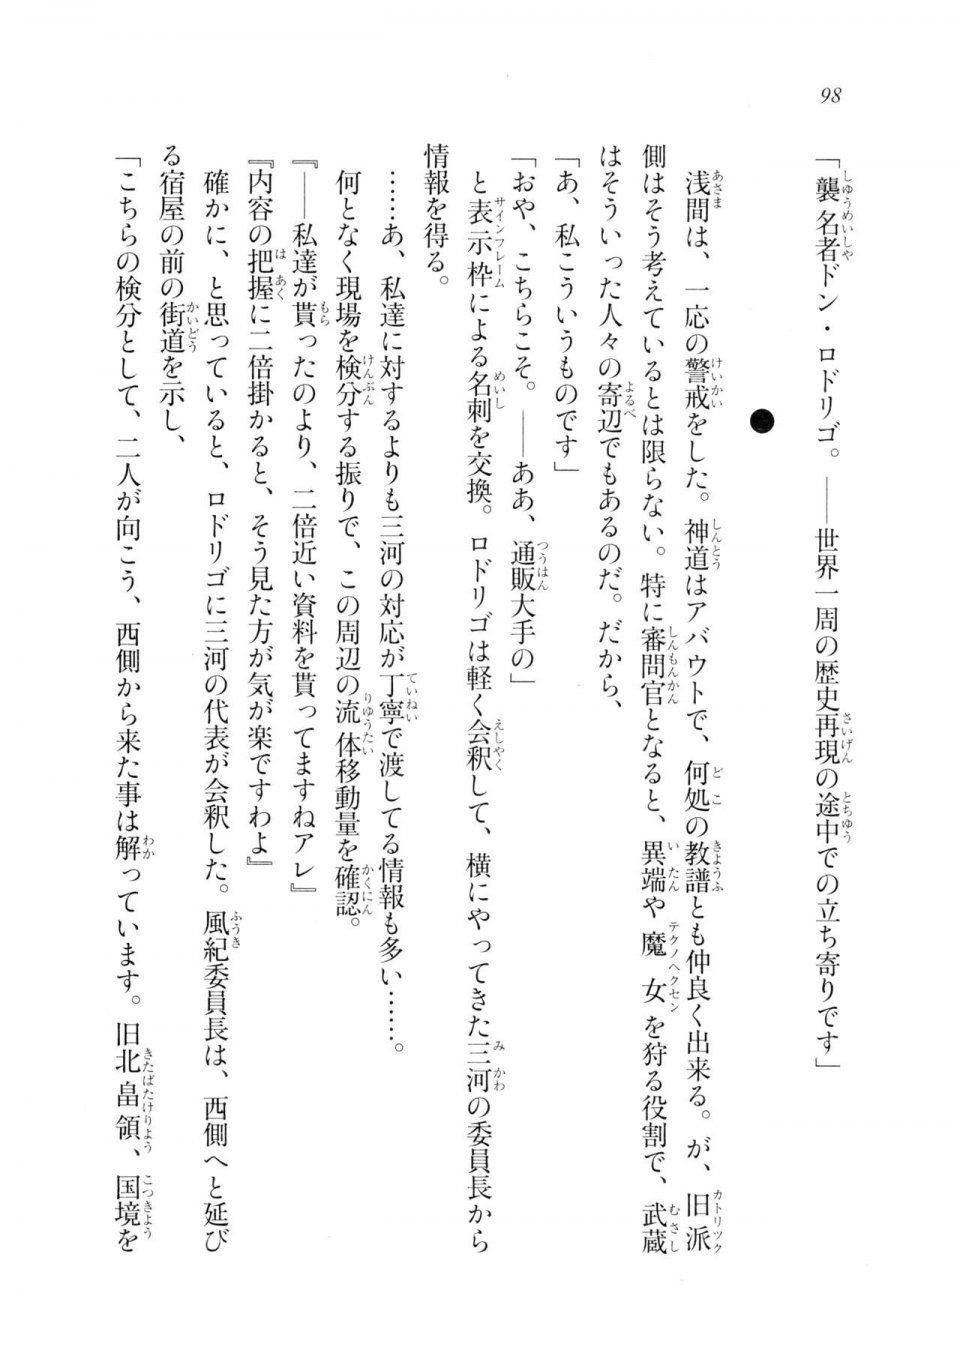 Kyoukai Senjou no Horizon LN Sidestory Vol 2 - Photo #96